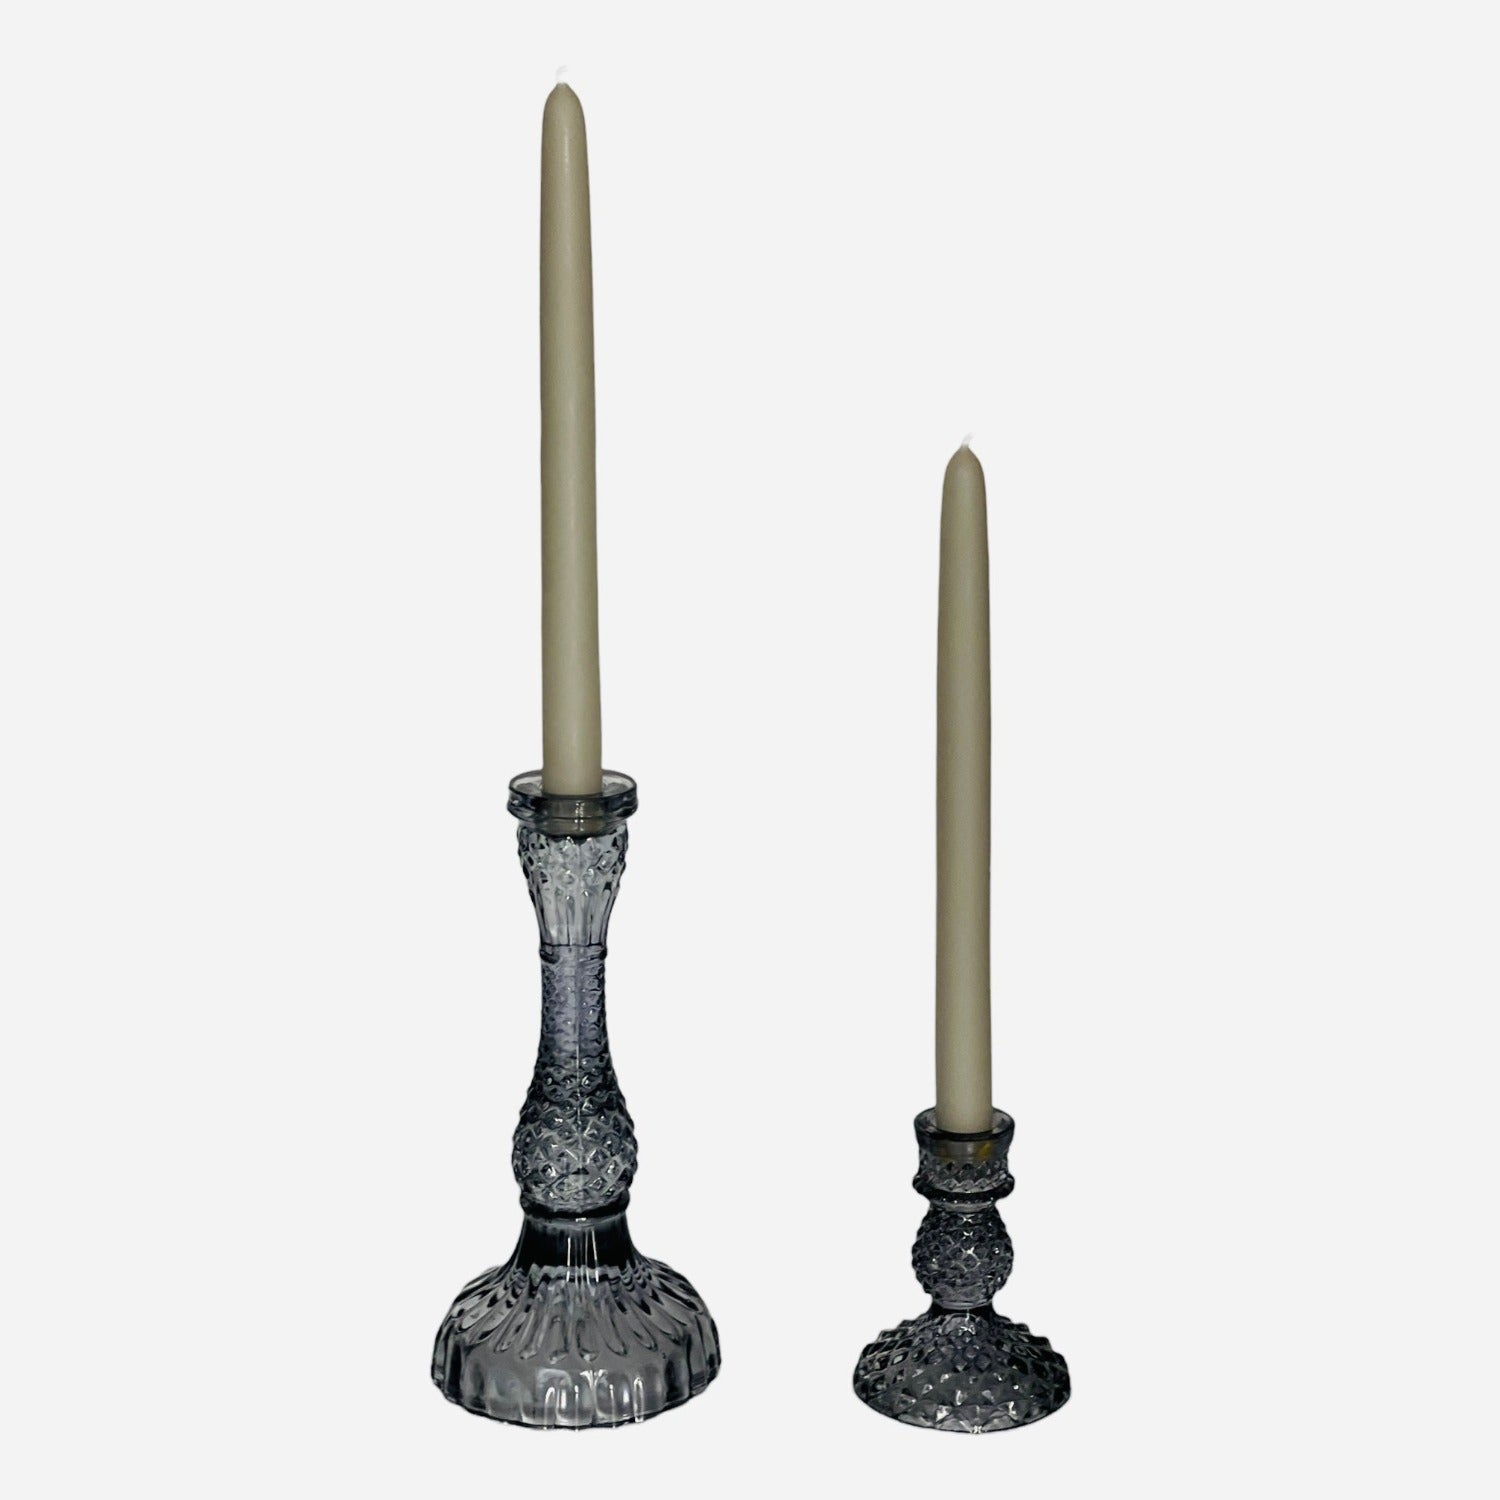 Tall Vintage Glass Candleholder - Smoke